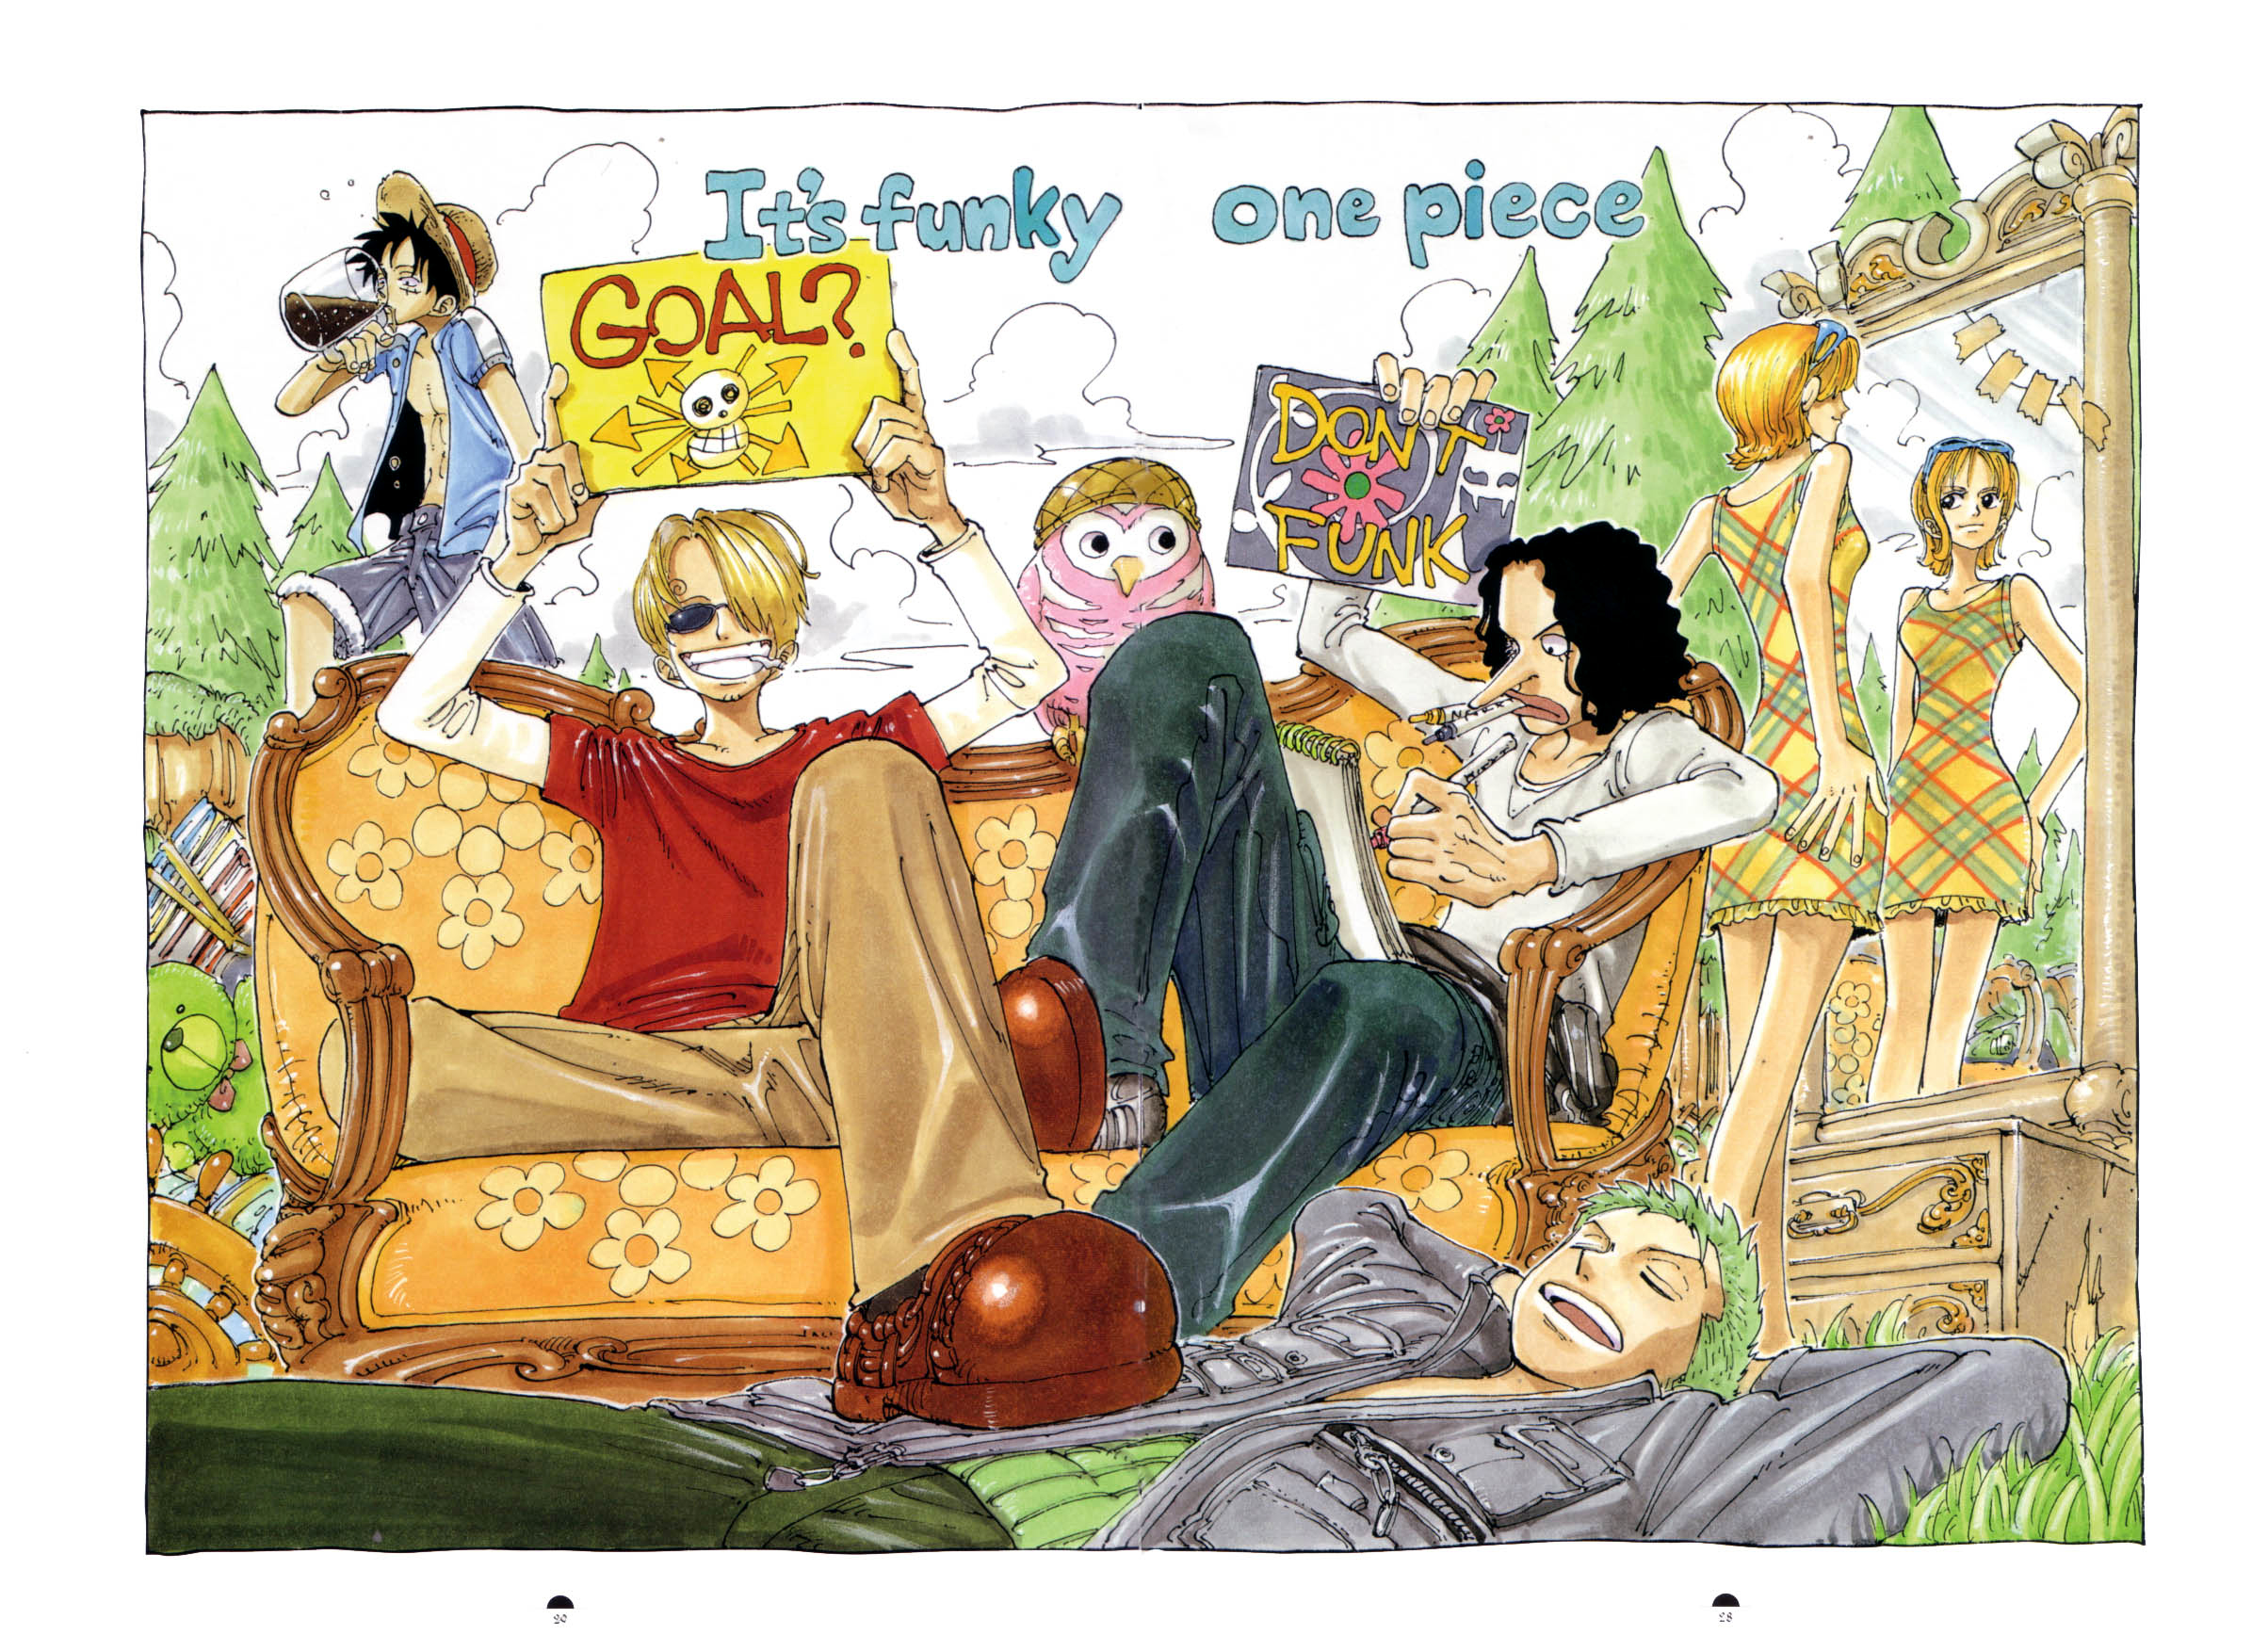 Asberhug on X: #ONEPIECE #ONEPIECE107 L'affiche promotionnelle pour le Tome  107 de One Piece 👀  / X